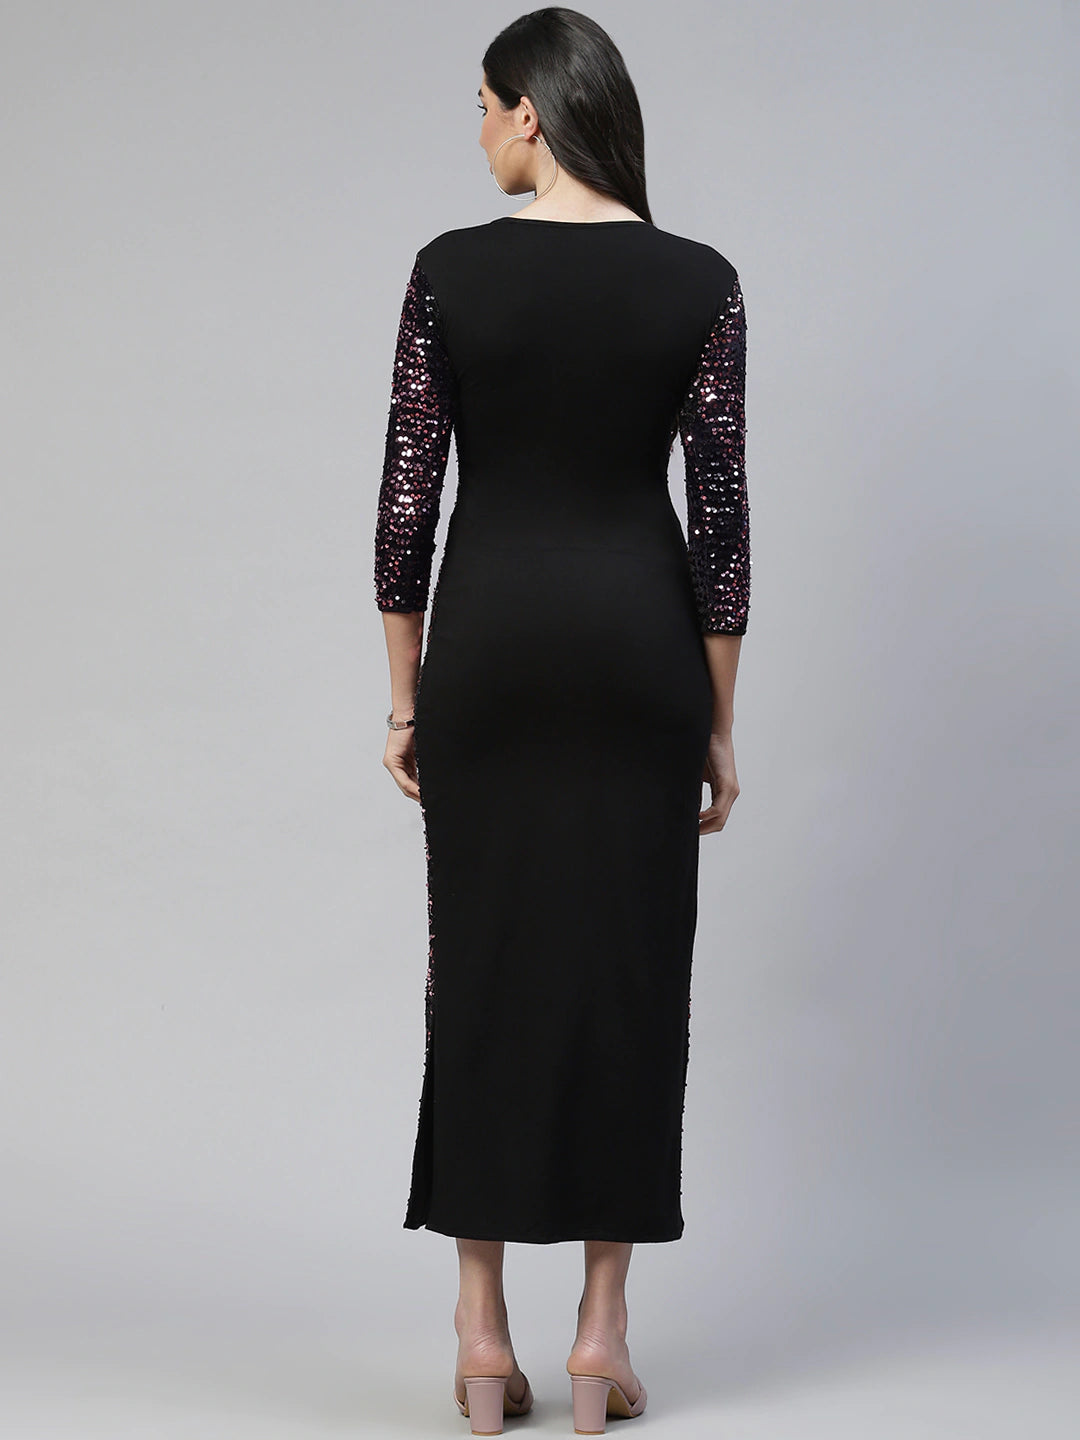 Cottinfab Black & Purple Sequined Sheath Midi Dress